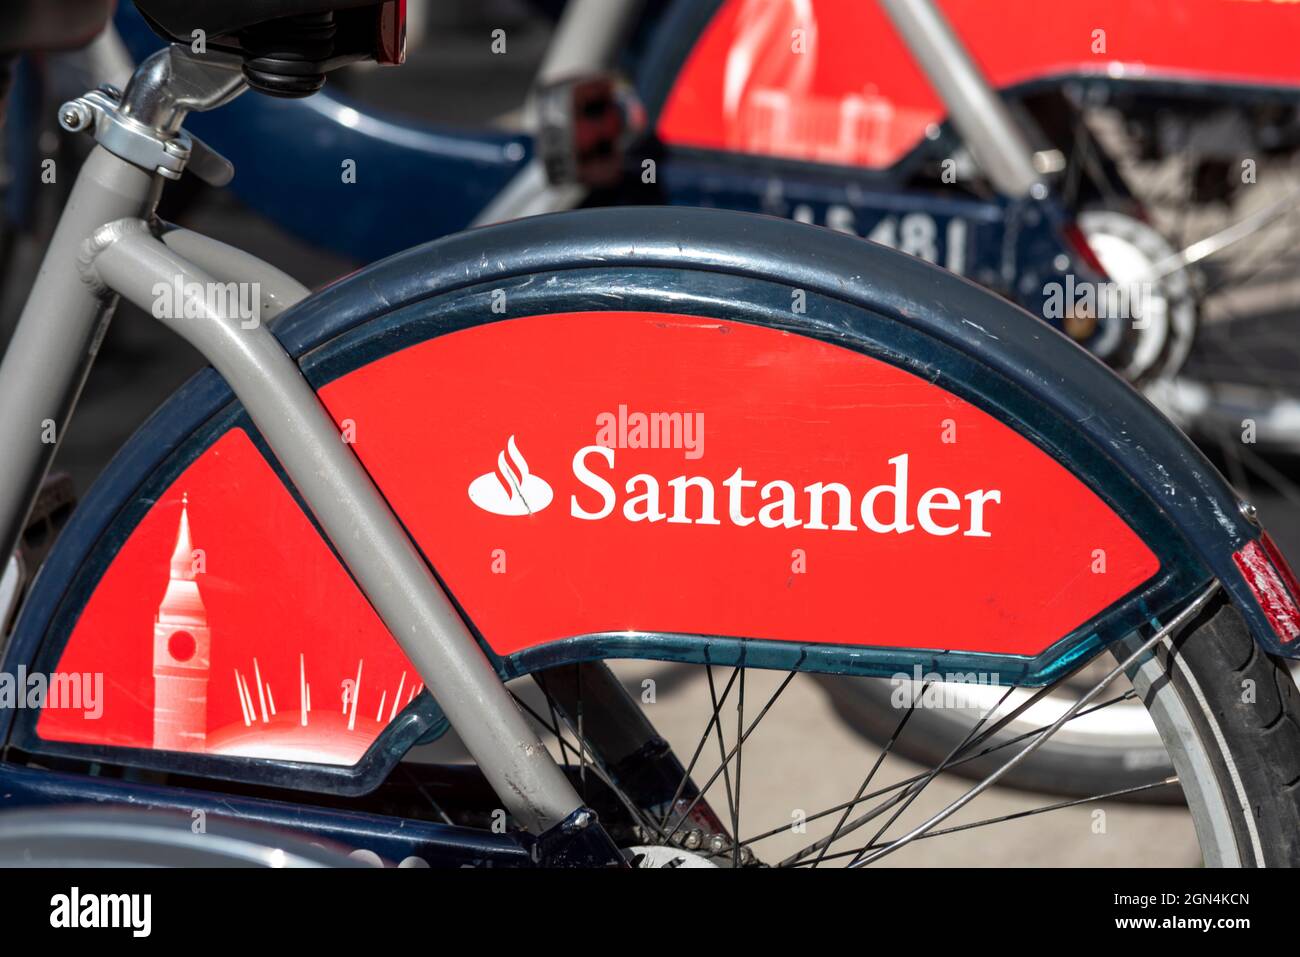 Santander Cycles in una docking station a Westminster, Londra. Noleggio biciclette pubblico nella città di Londra, Regno Unito. Dettagli del logo e dei punti di riferimento del marchio Foto Stock